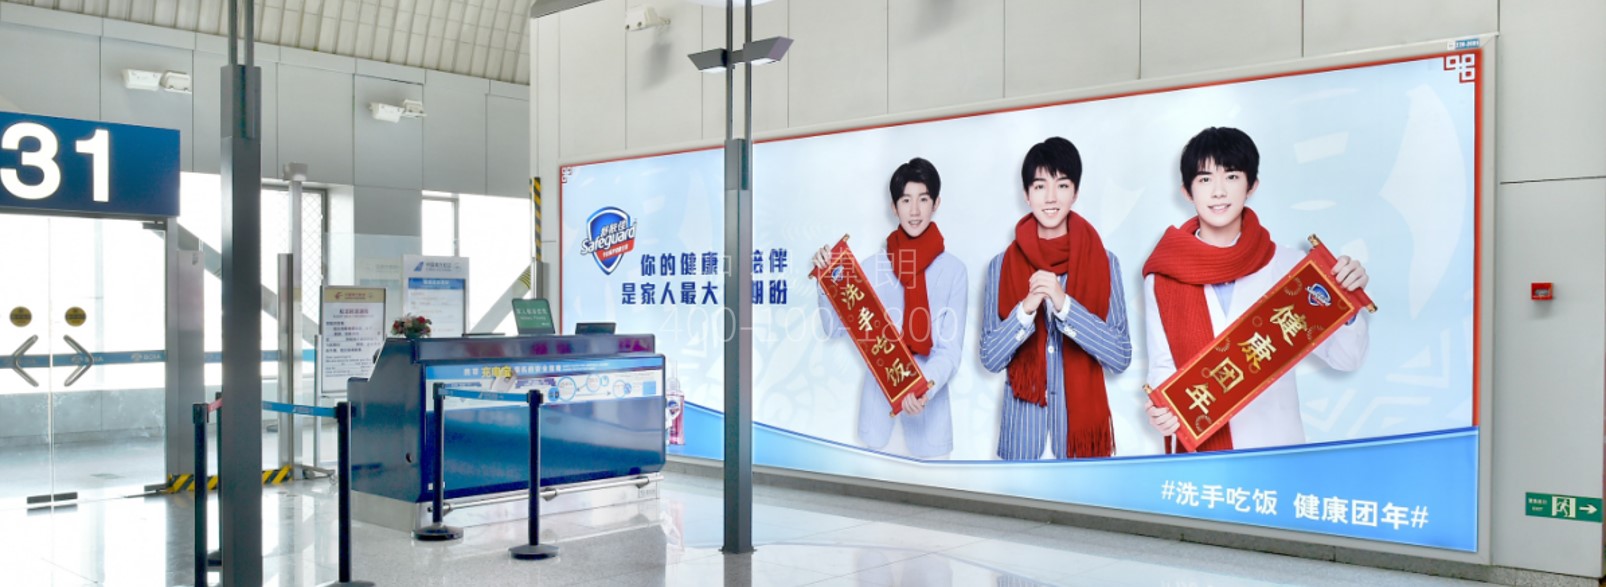 北京首都机场广告-T2国内出发候机区墙面灯箱套装